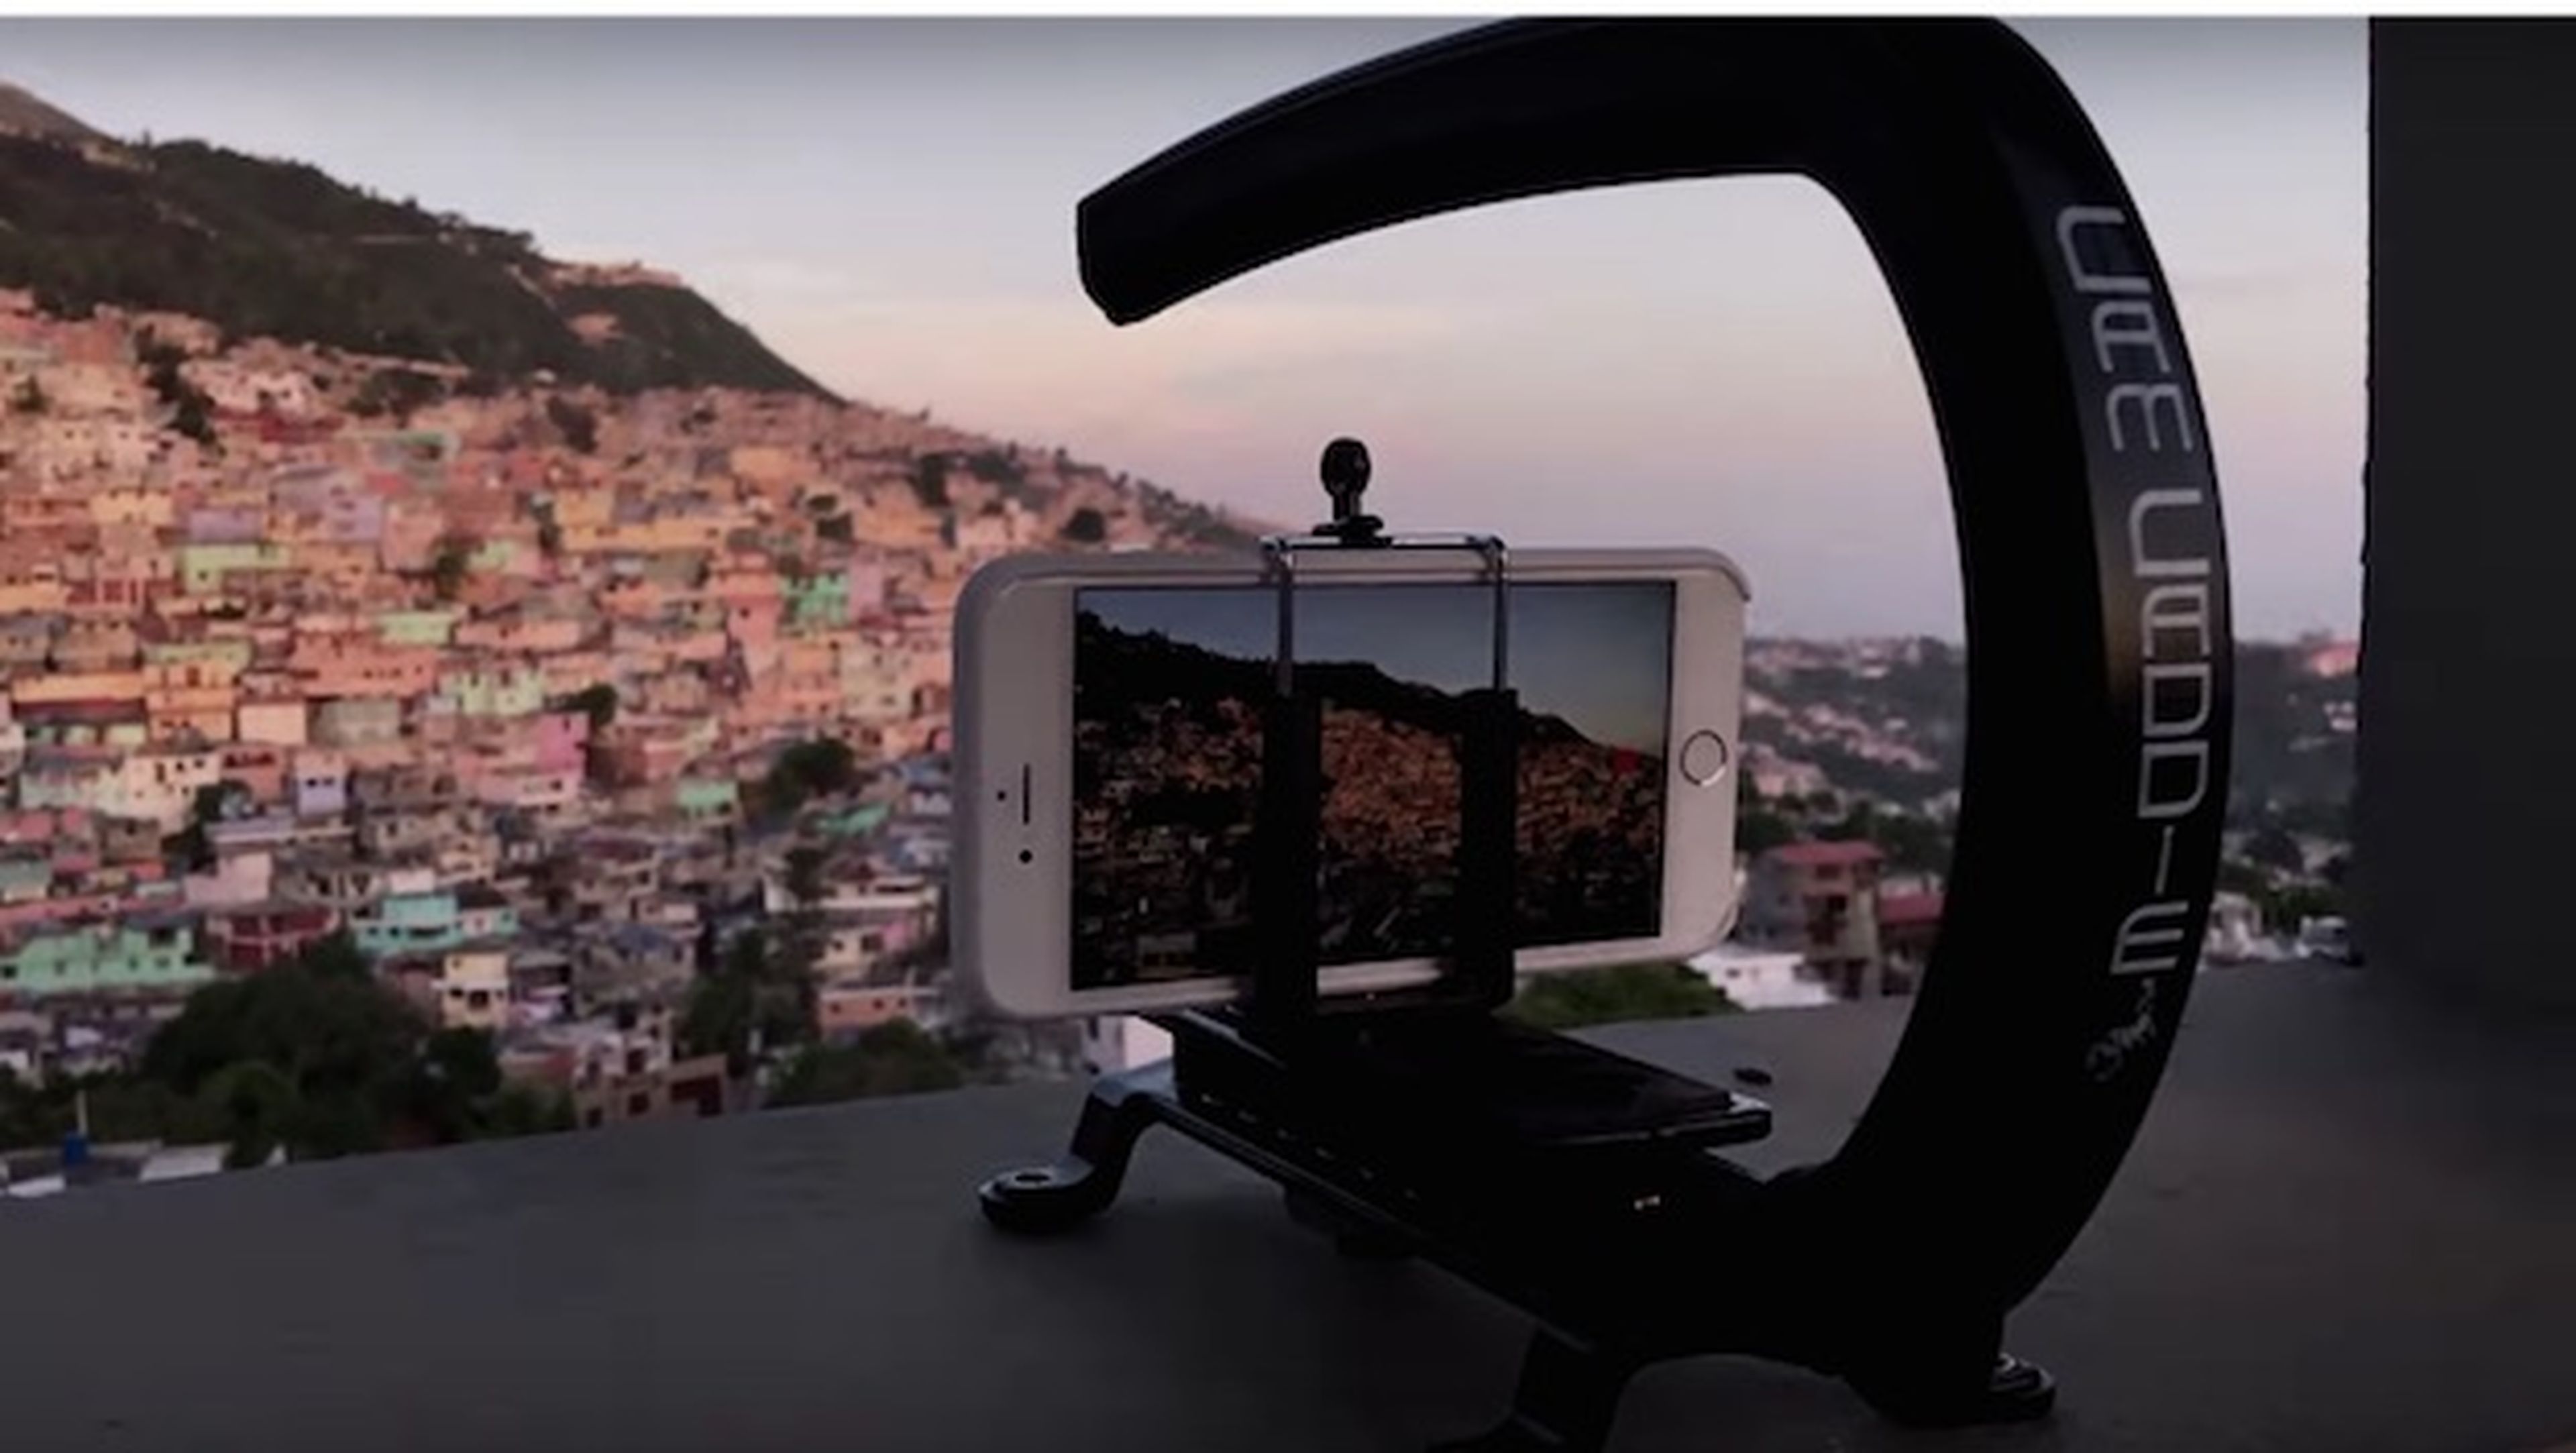 Graban el primer documental en 4K con el nuevo iPhone 6S Plus